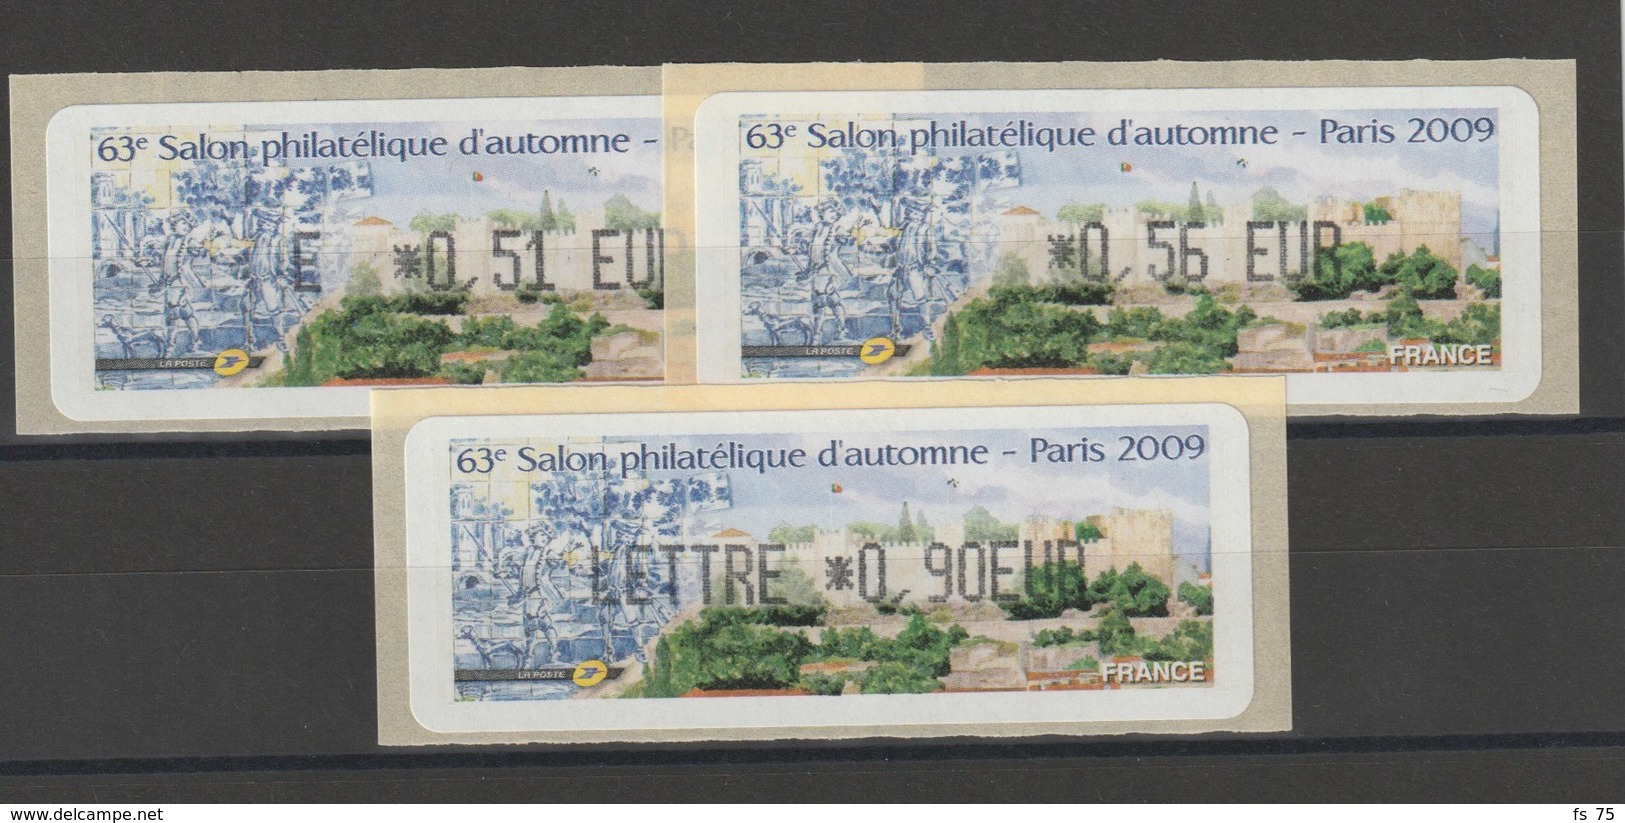 FRANCE - 3 VIGNETTES 0,51€, 0,56€ ET 0,90€ - 63E SALON PHILATELIQUE D'AUTOMNE - PARIS 2009 - 1999-2009 Abgebildete Automatenmarke